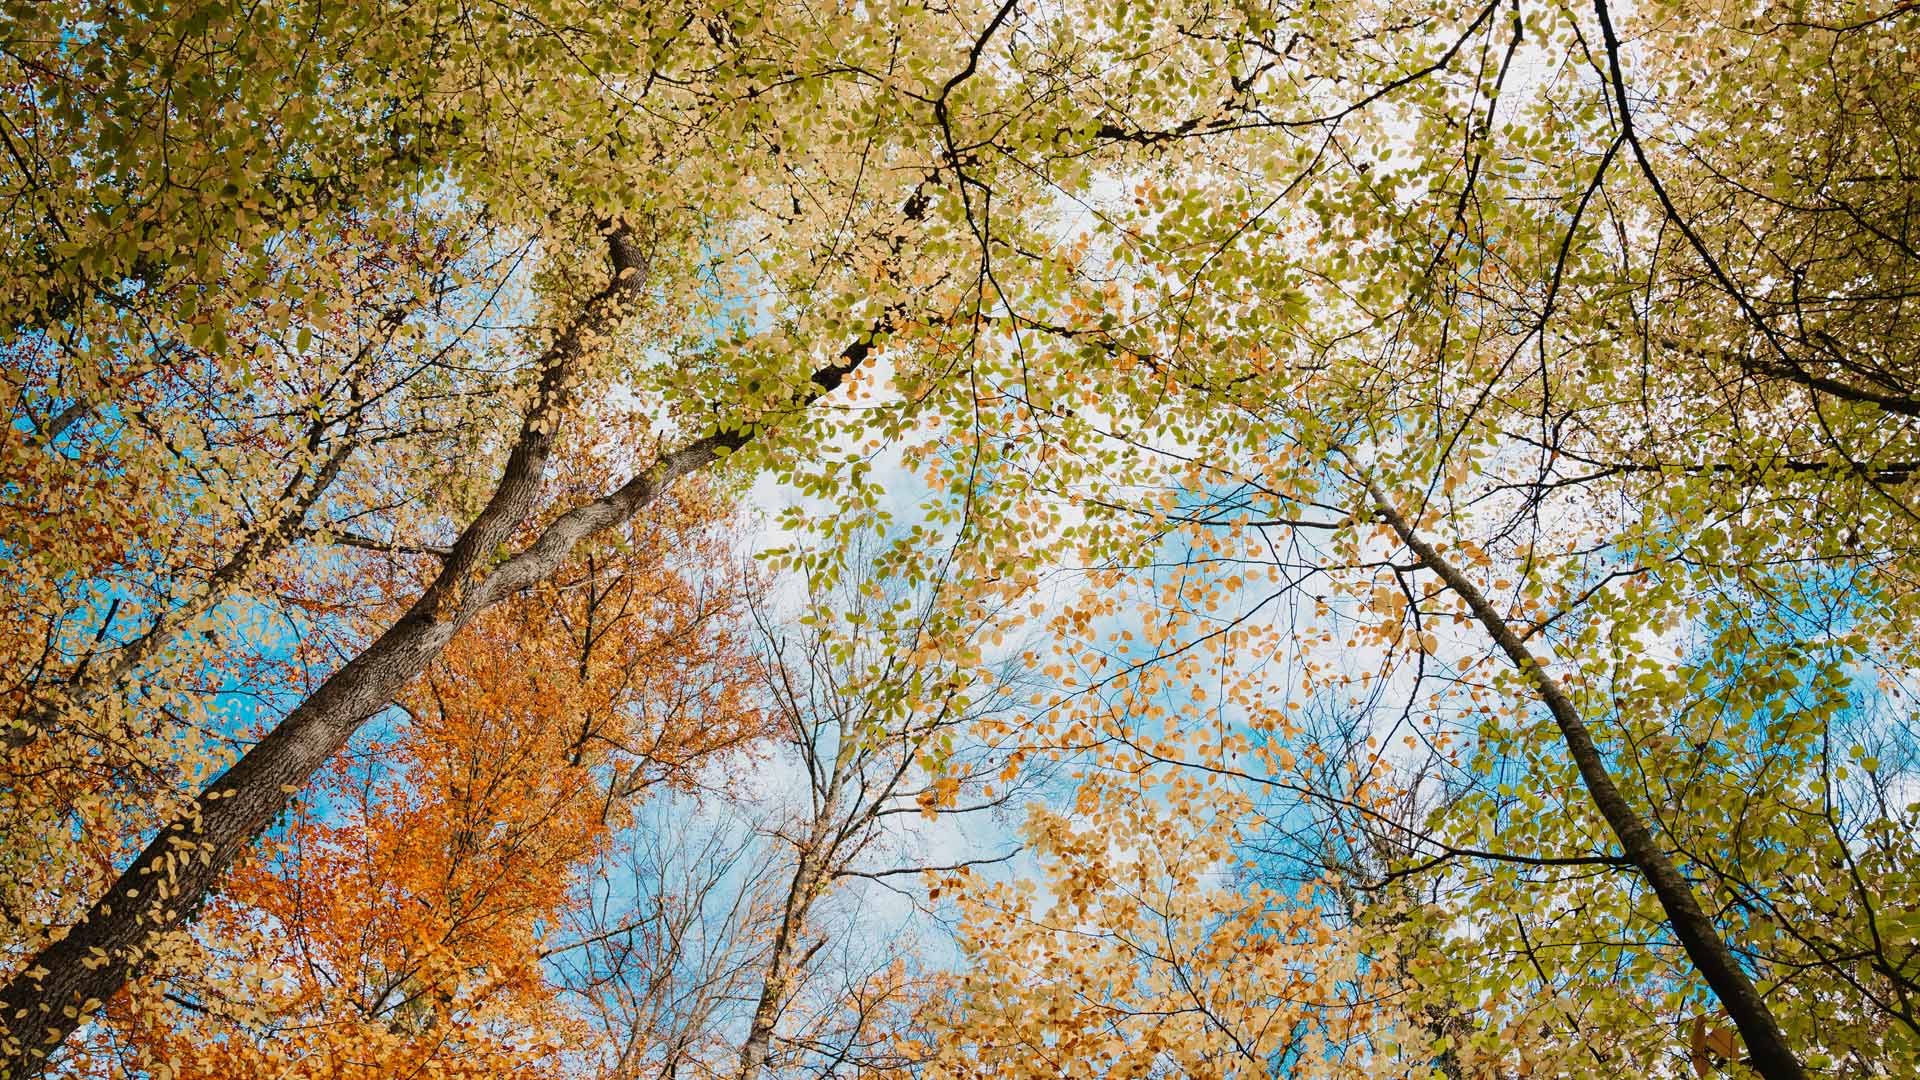 C'est beau l'agglo en automne © Marie Nussbaumer